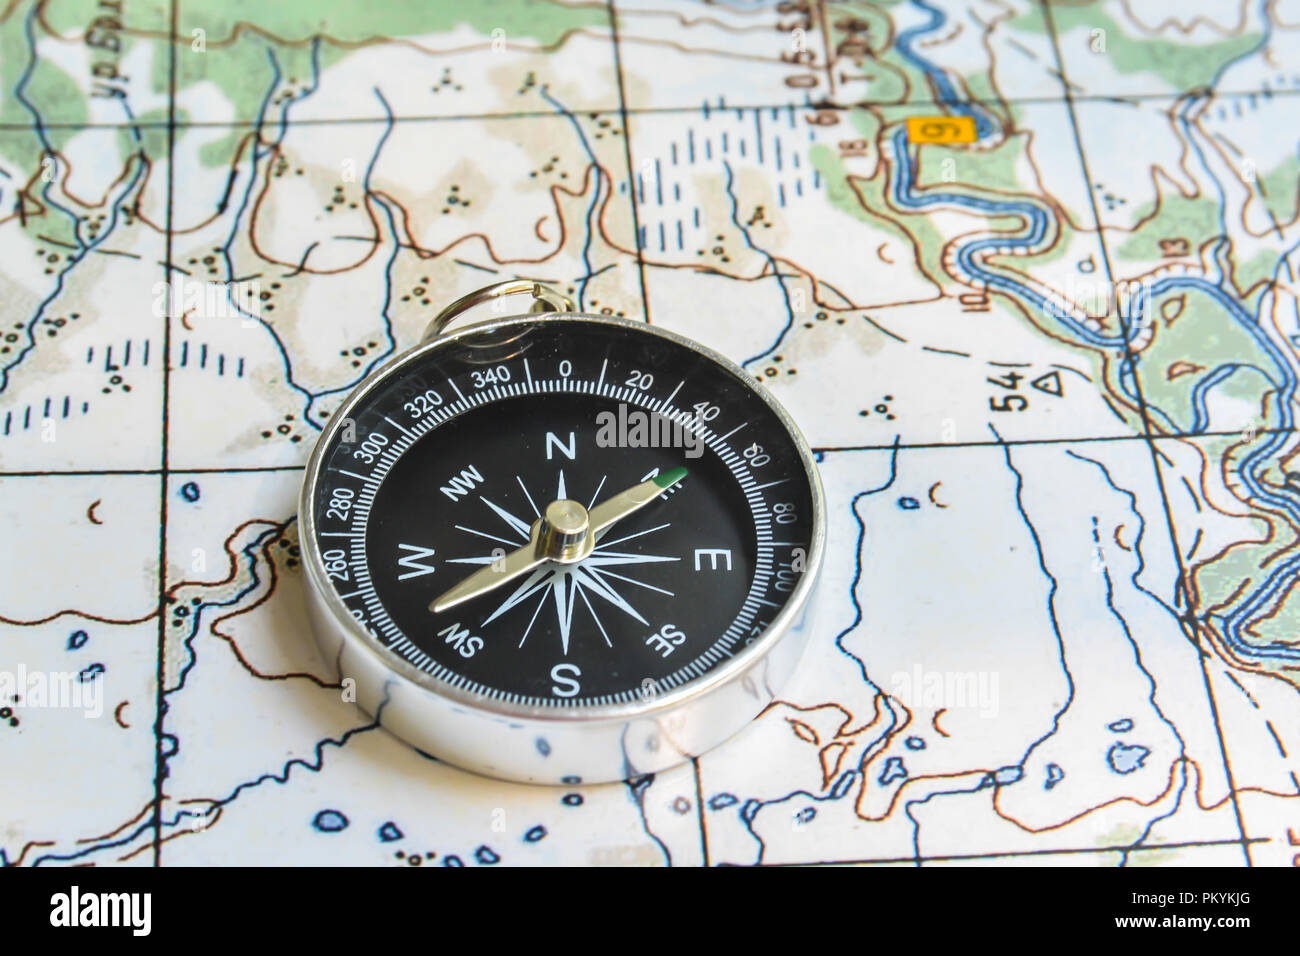 Boussole et carte. Le compas magnétique est situé sur une carte topographique. Banque D'Images